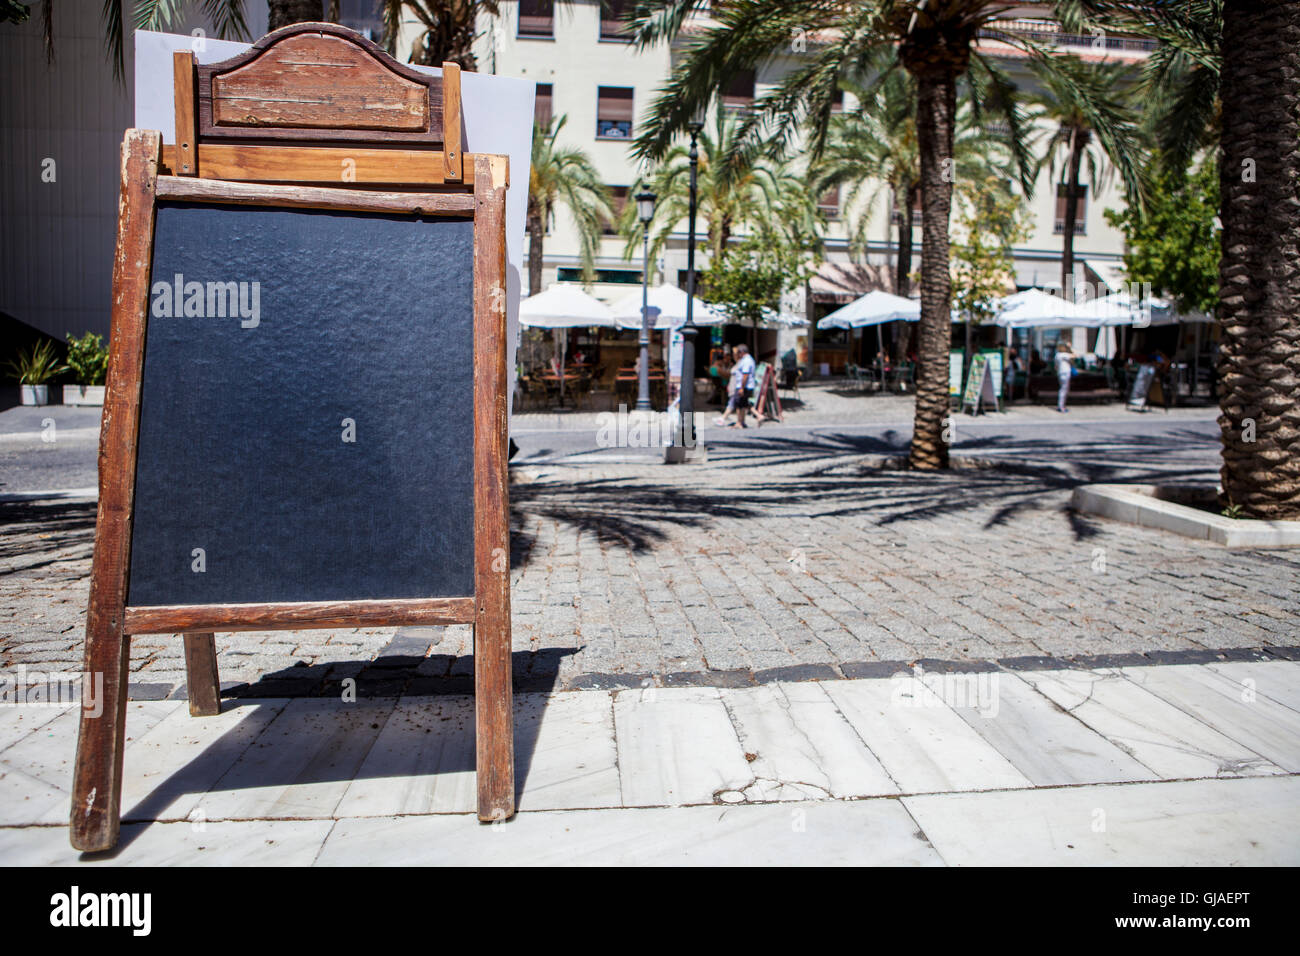 Tabloïd vide proposant des aliments pour terrasse des restaurants, Granada, Espagne Banque D'Images